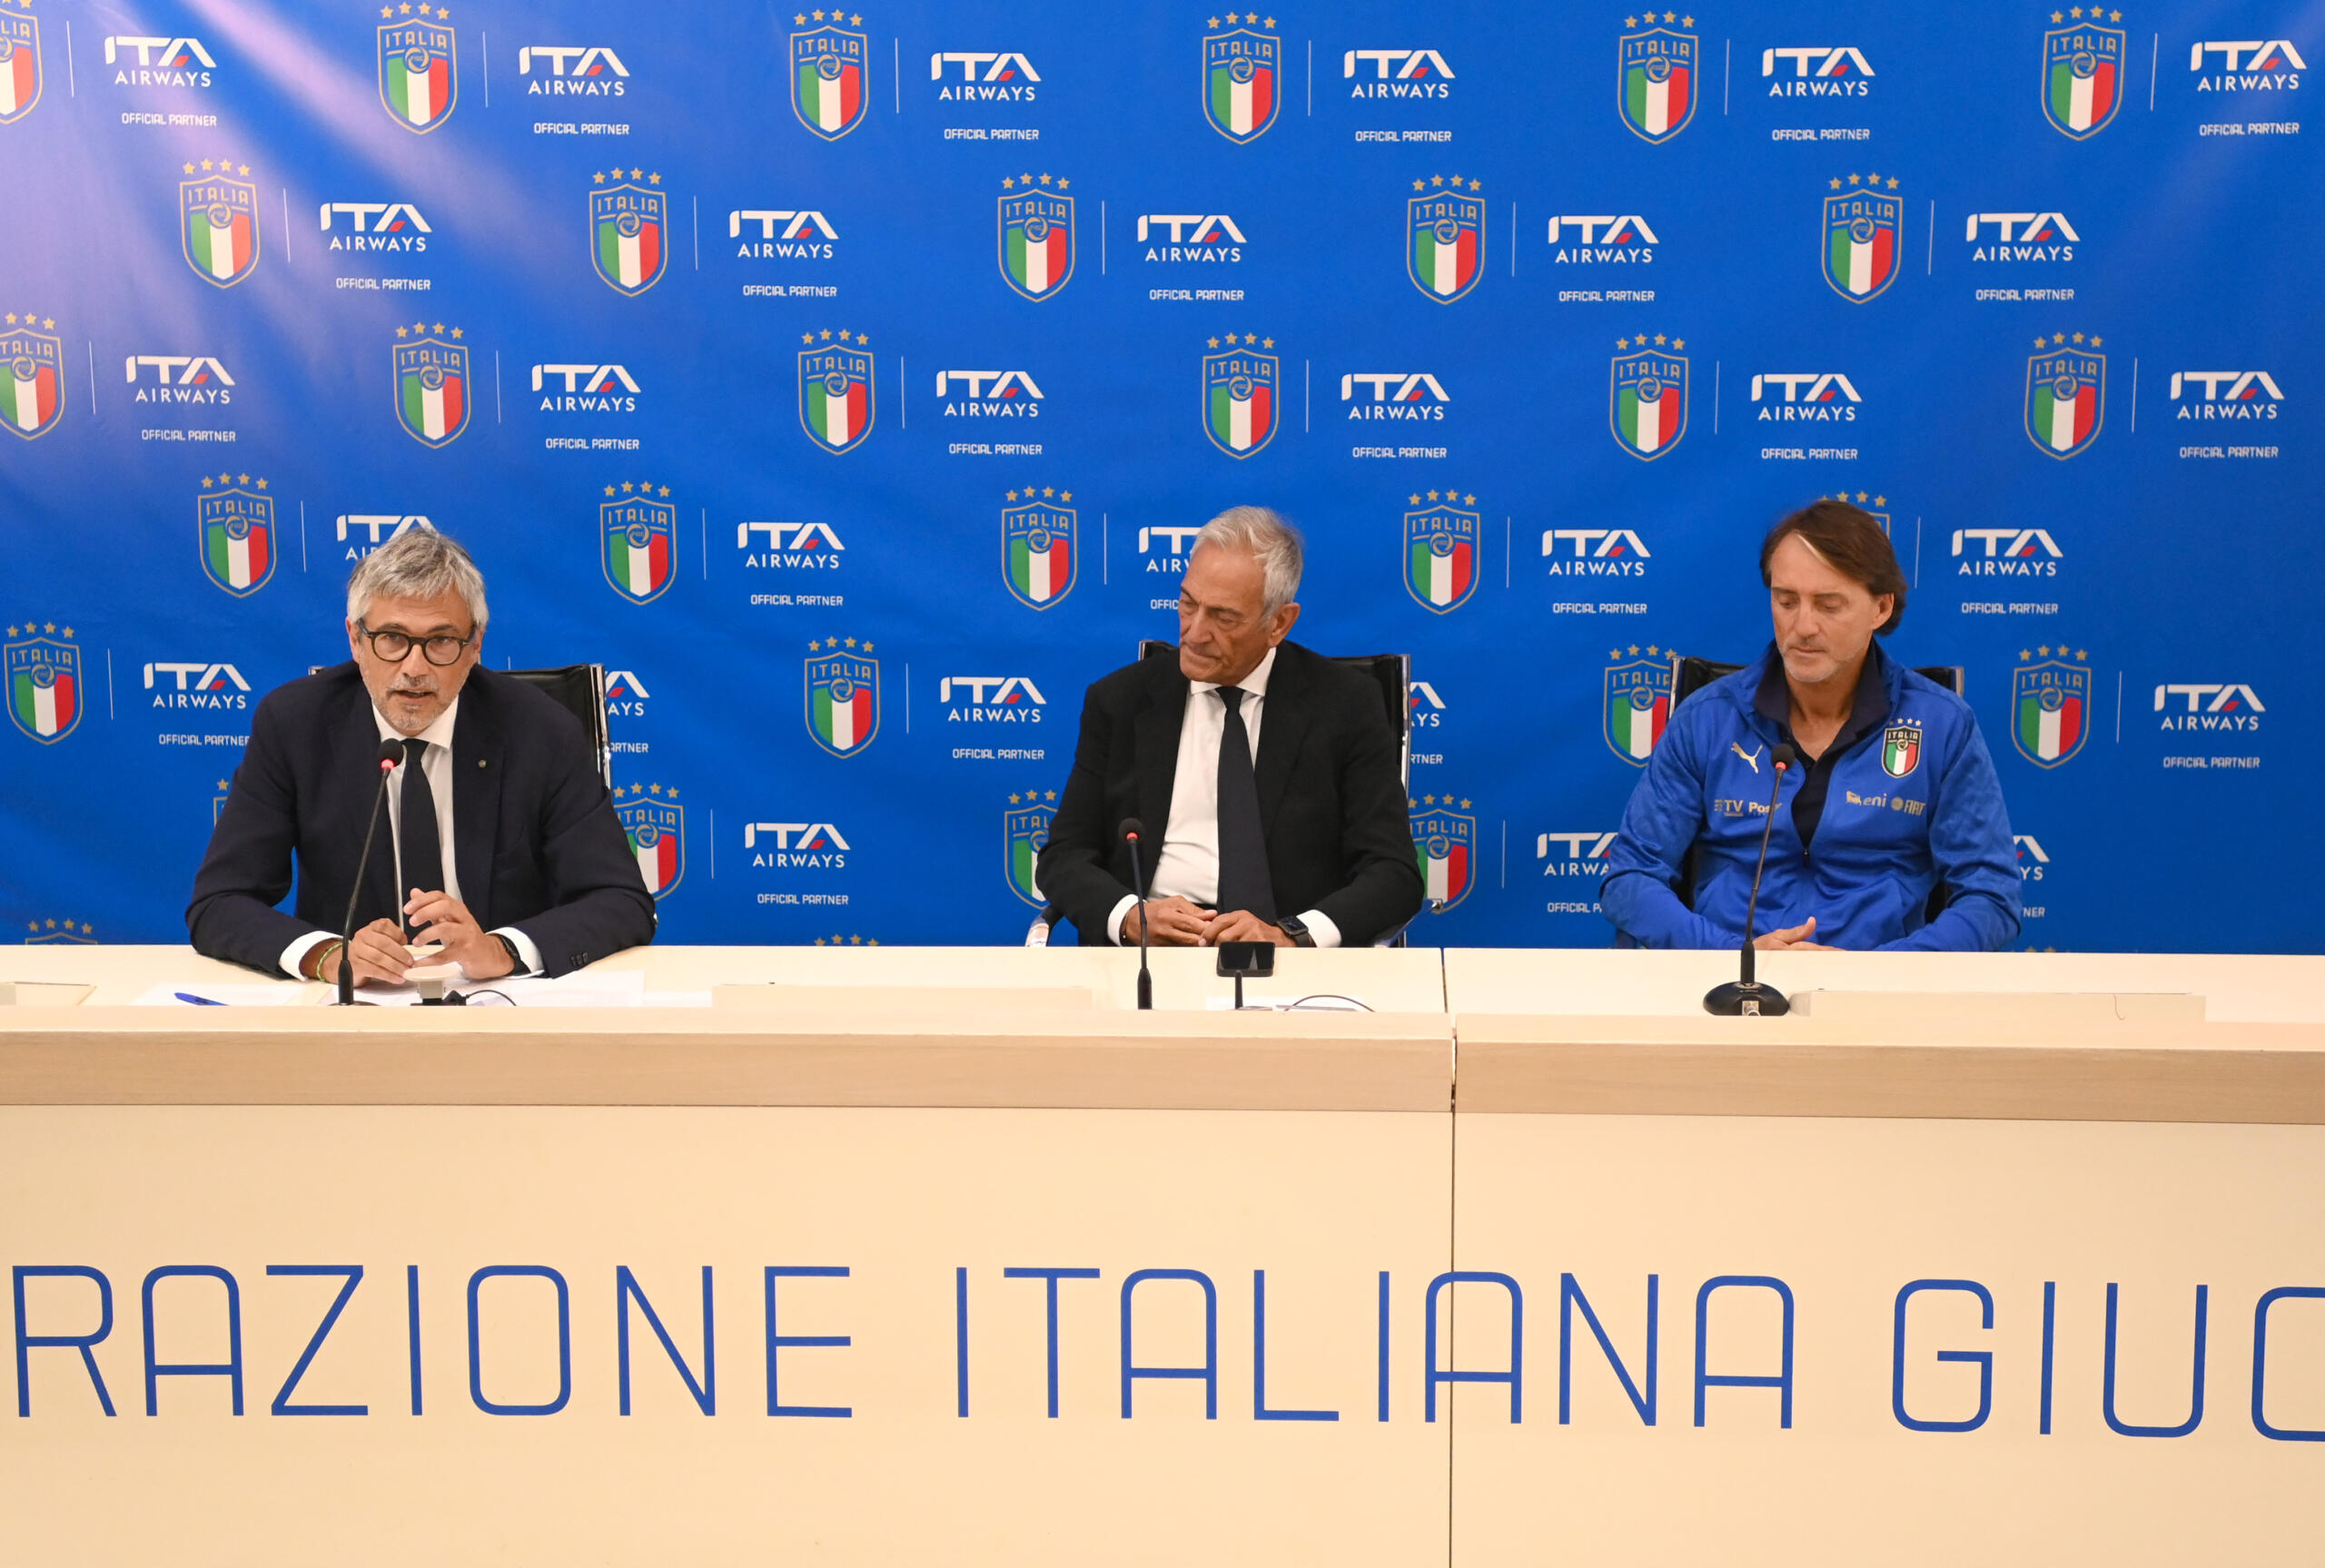 Italia, arrivano le prime immagini della nuova maglia della nazionale